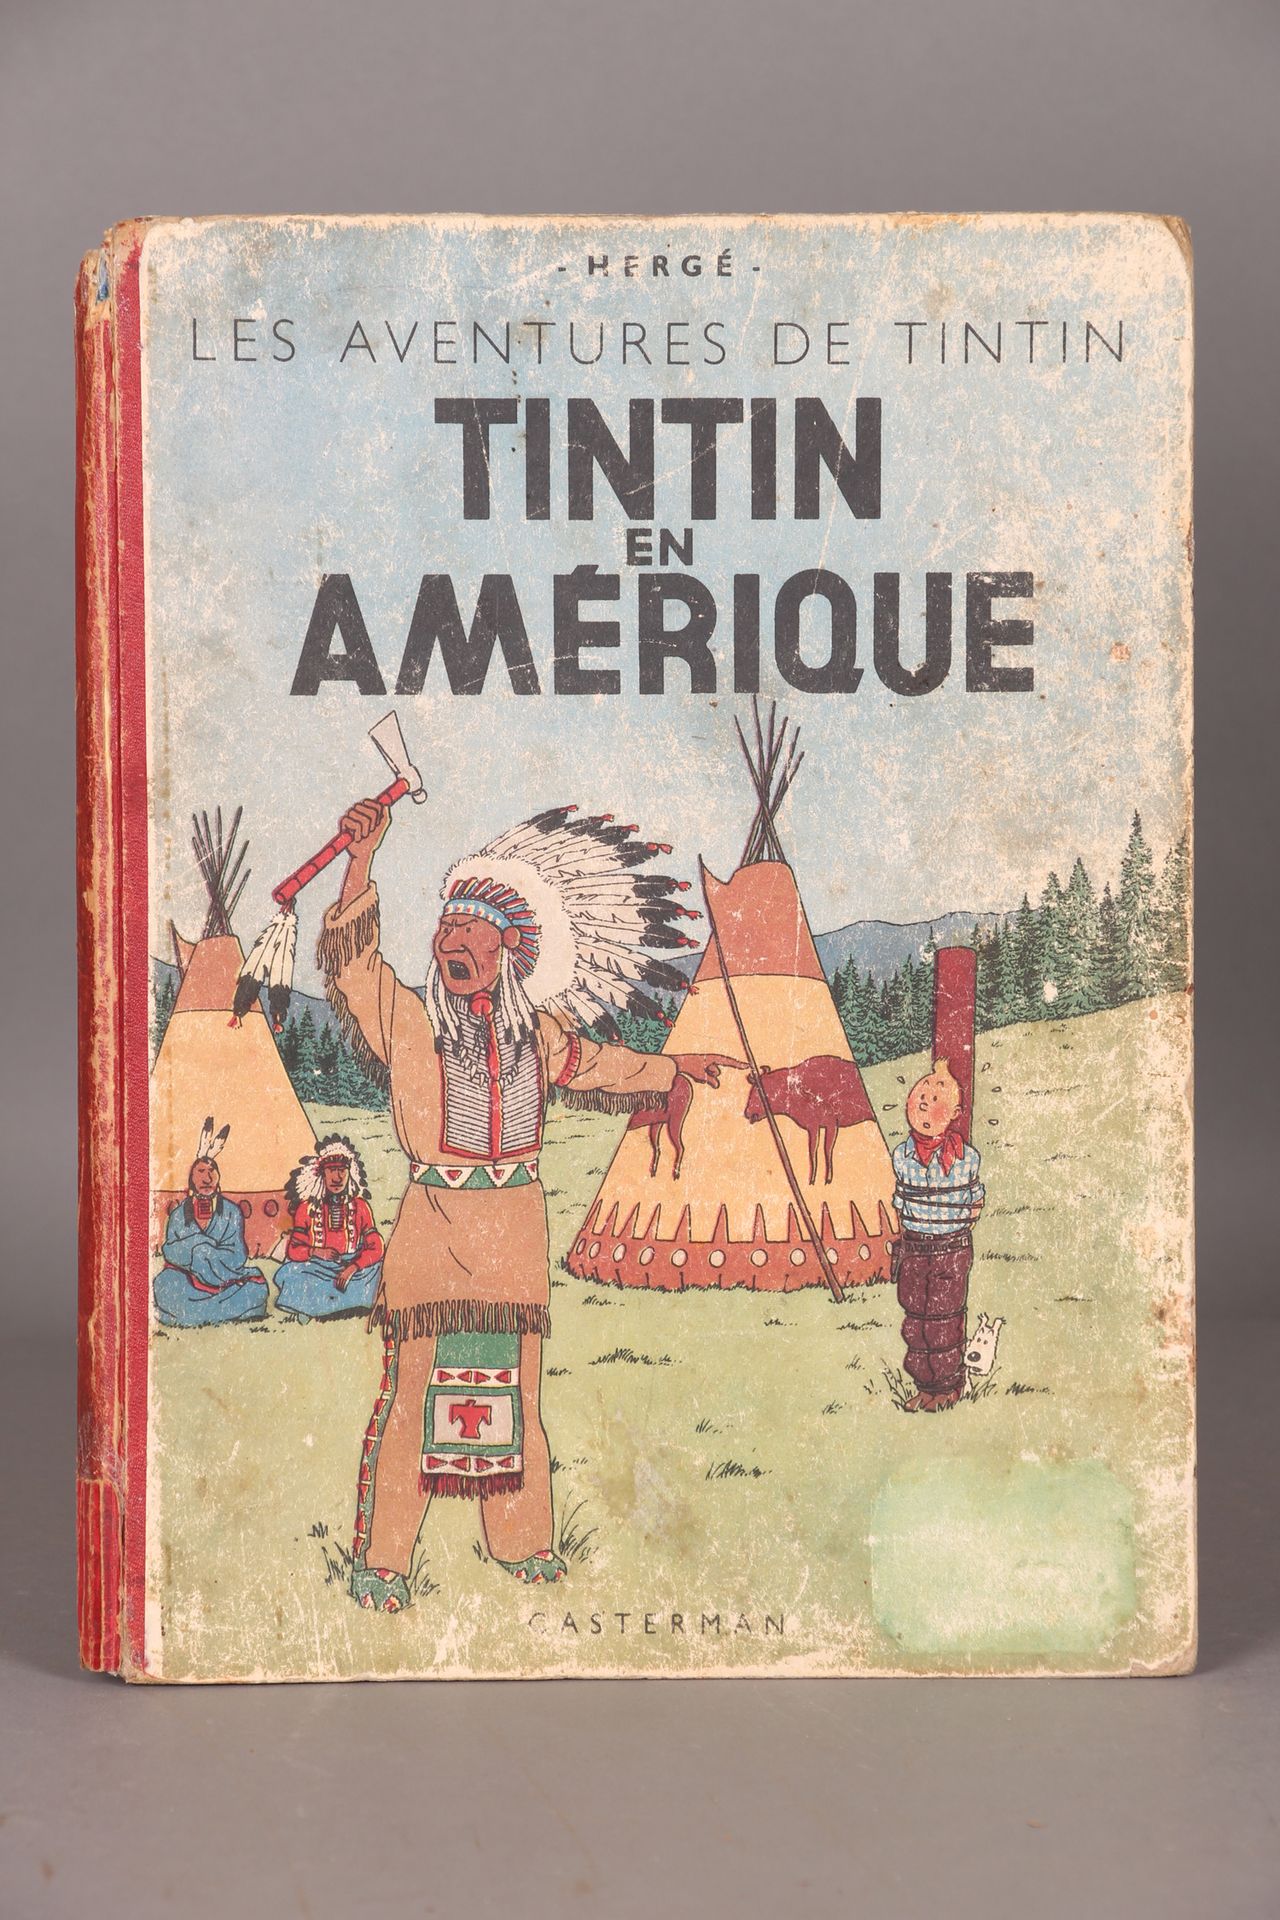 [TINTIN]. HERGÉ. "Tintin en Amérique》，Casterman 出版社，1942 年。黑白版。第 2 版 A18，深蓝色封底纸，&hellip;